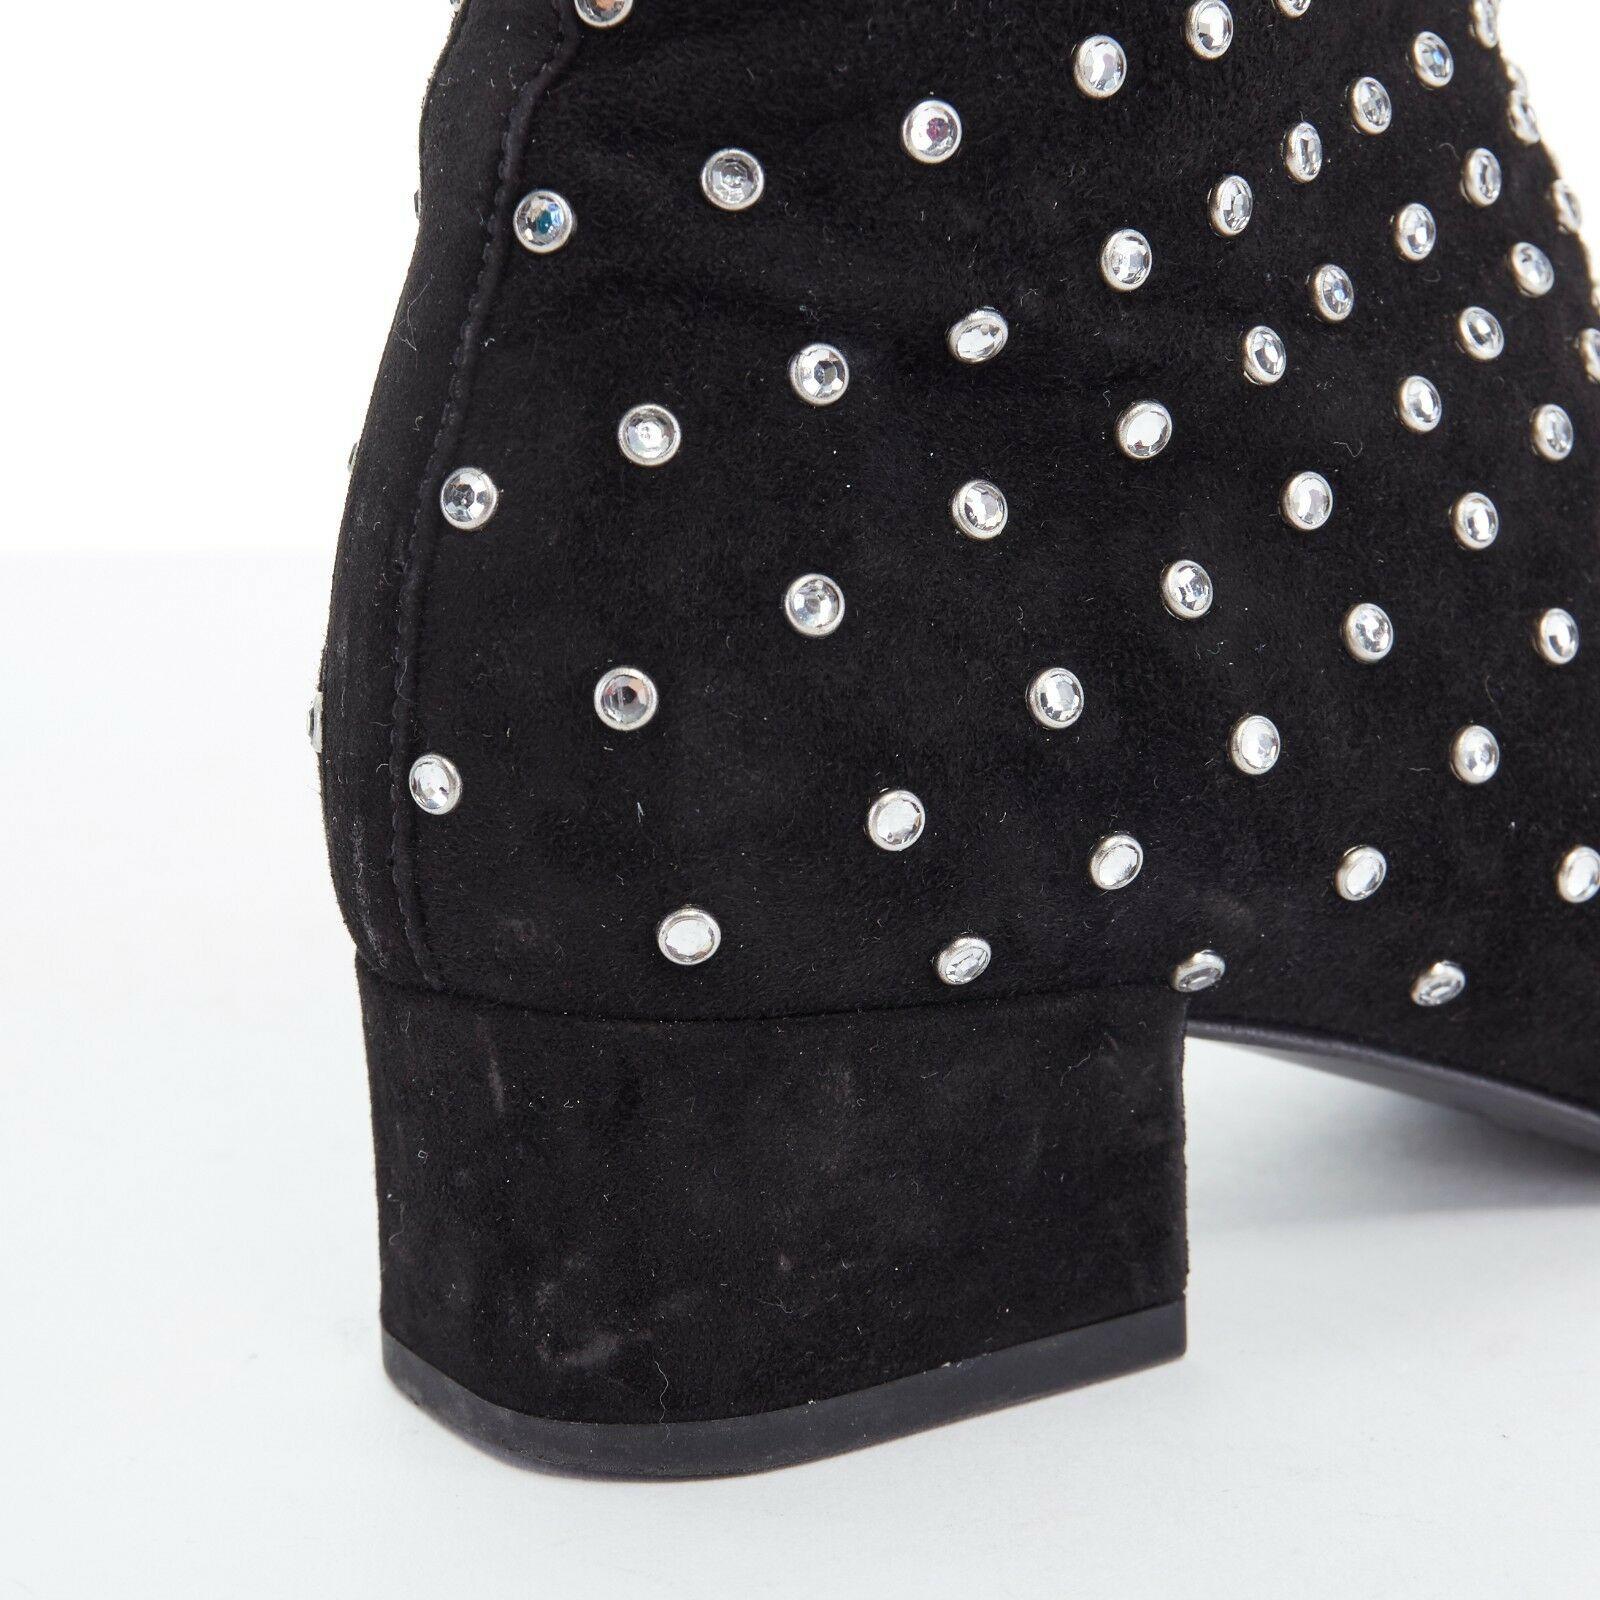 SAINT LAURENT PARIS black suede strass crystal embellished ankle boot shoe EU35 For Sale 4